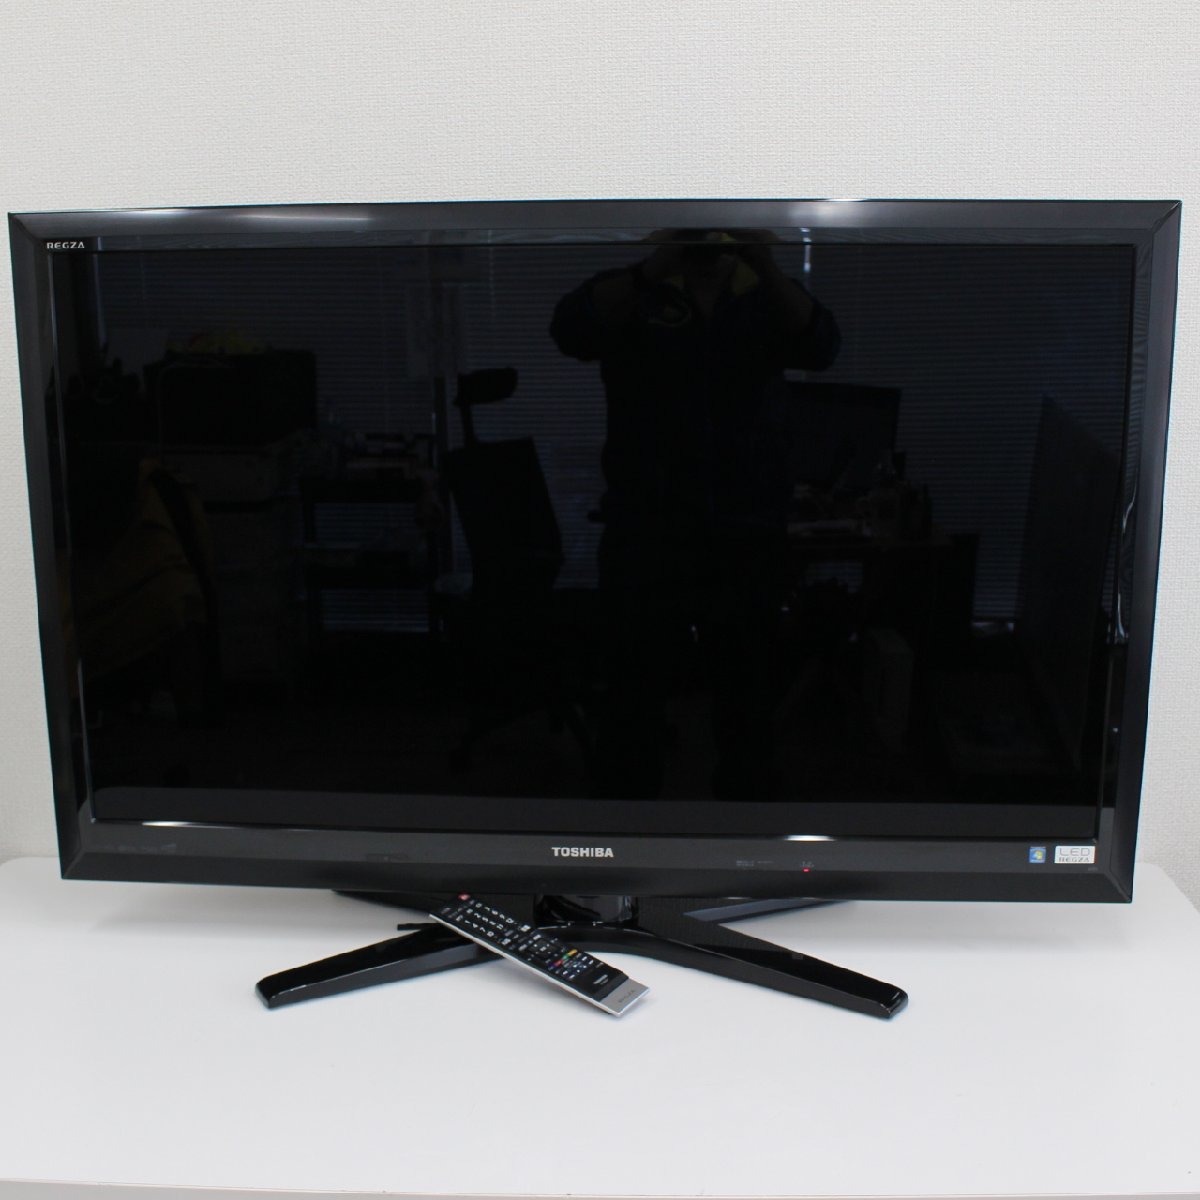 川崎市幸区にて 東芝 液晶テレビ 47Z1 2010年製 を出張買取させて頂きました。